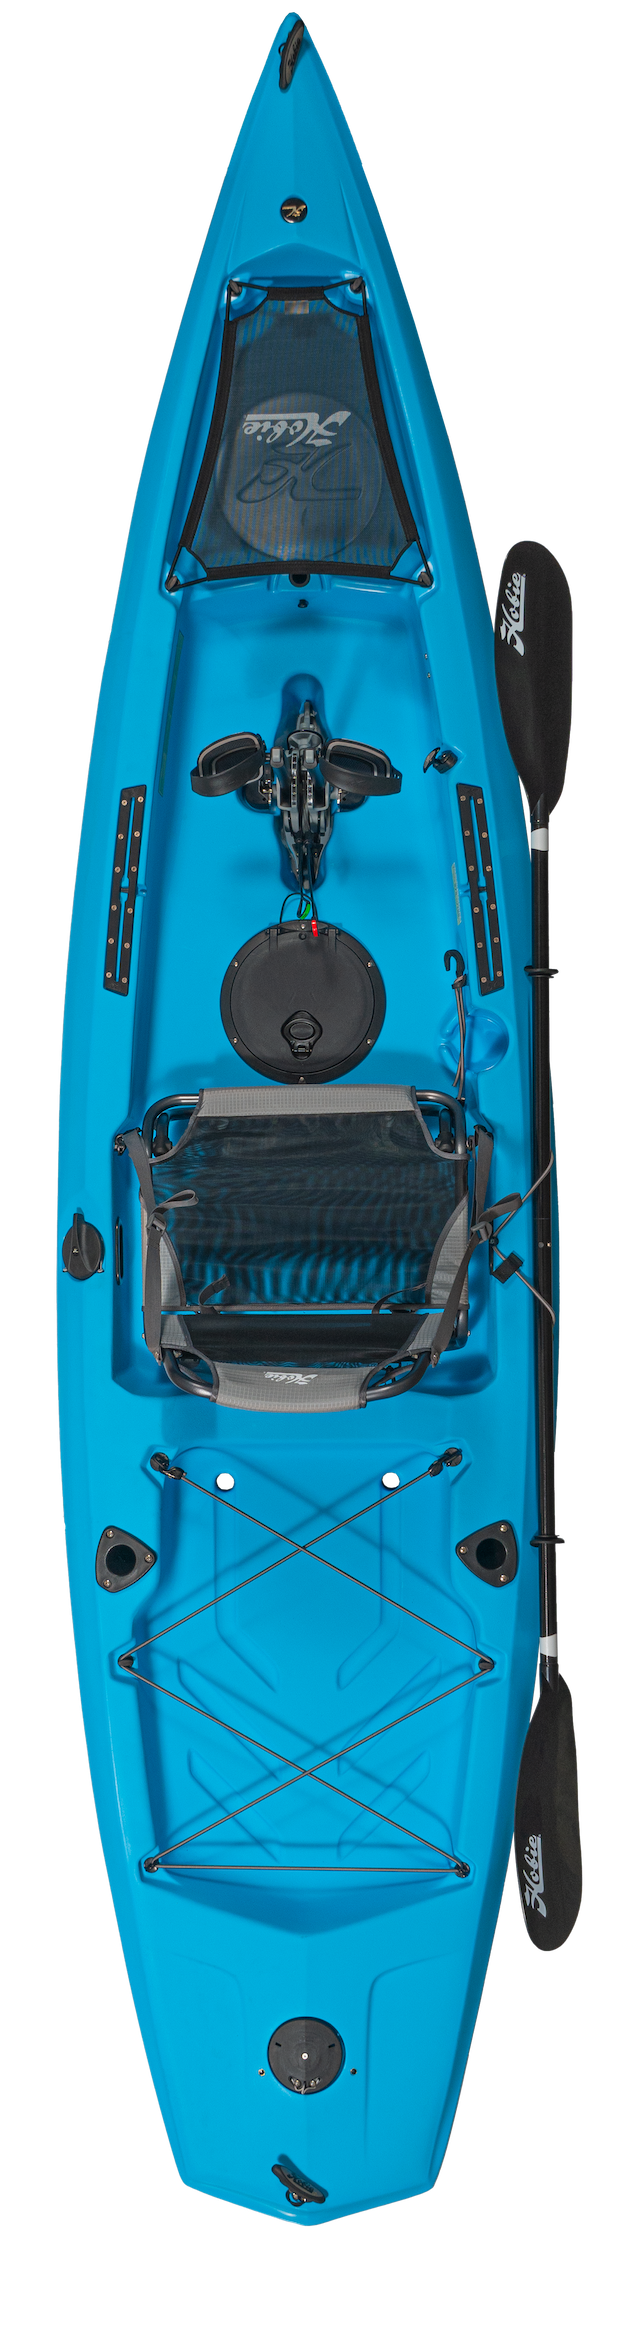 Kayak de pêche à propulsion homologué mer Hobie Mirage Compass couleur bleu glacier vue de dessus homologué CE